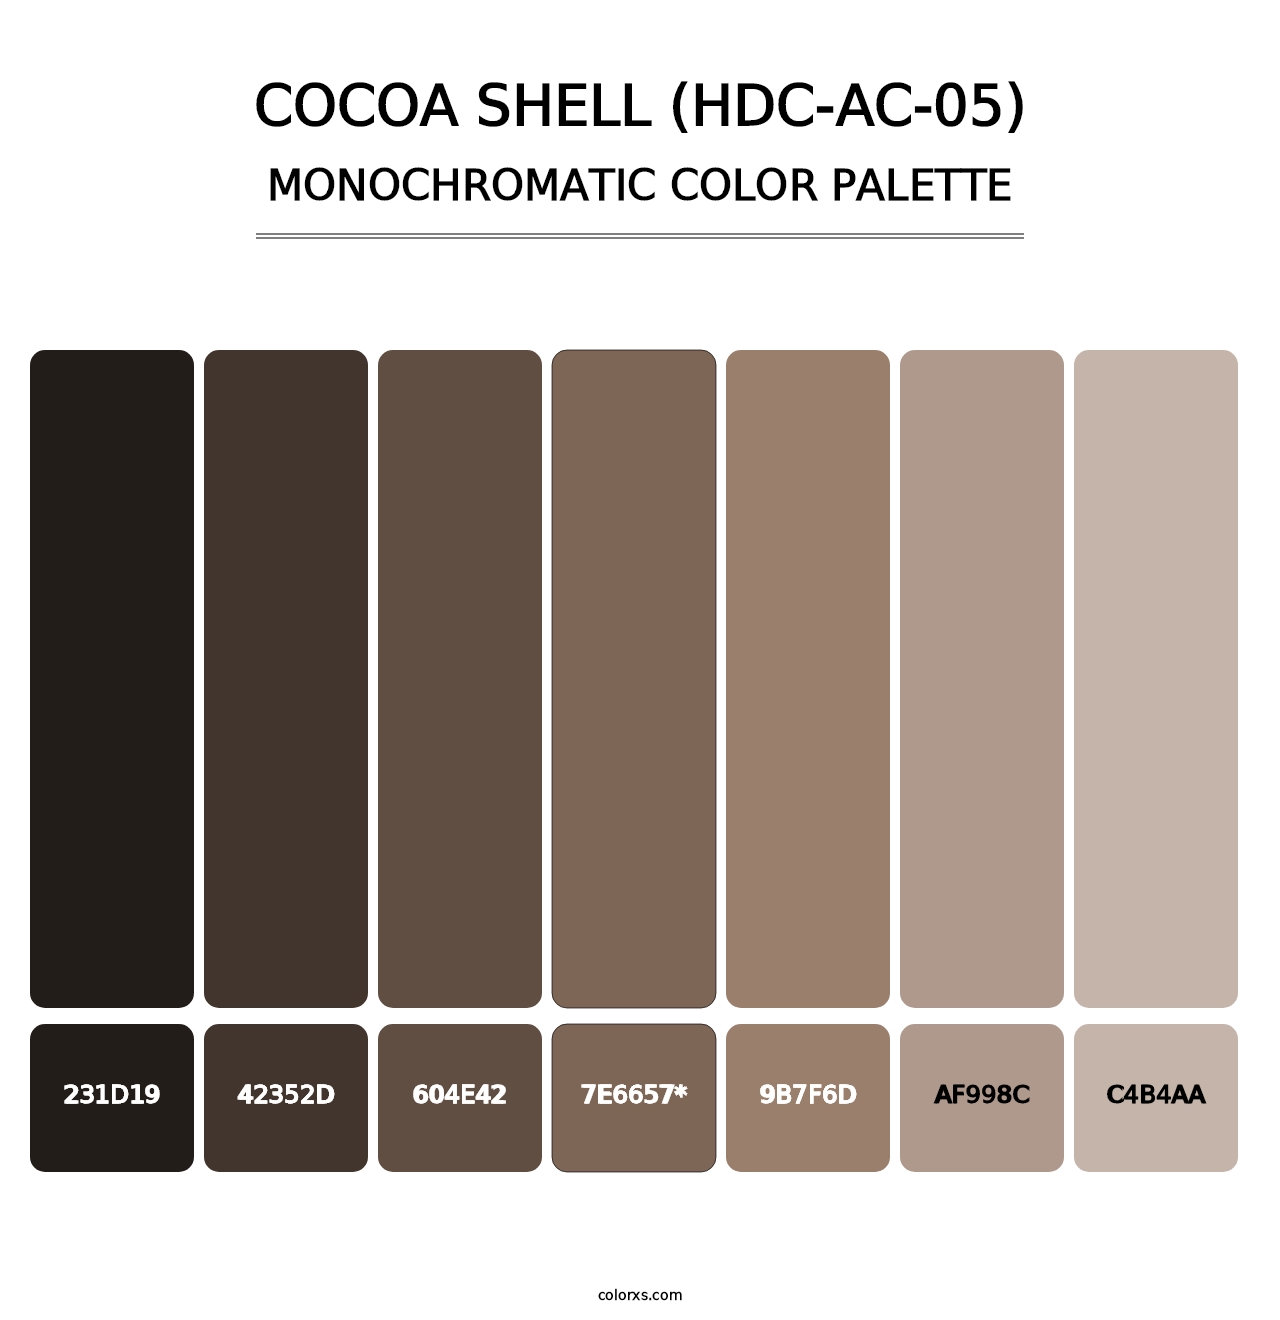 Cocoa Shell (HDC-AC-05) - Monochromatic Color Palette